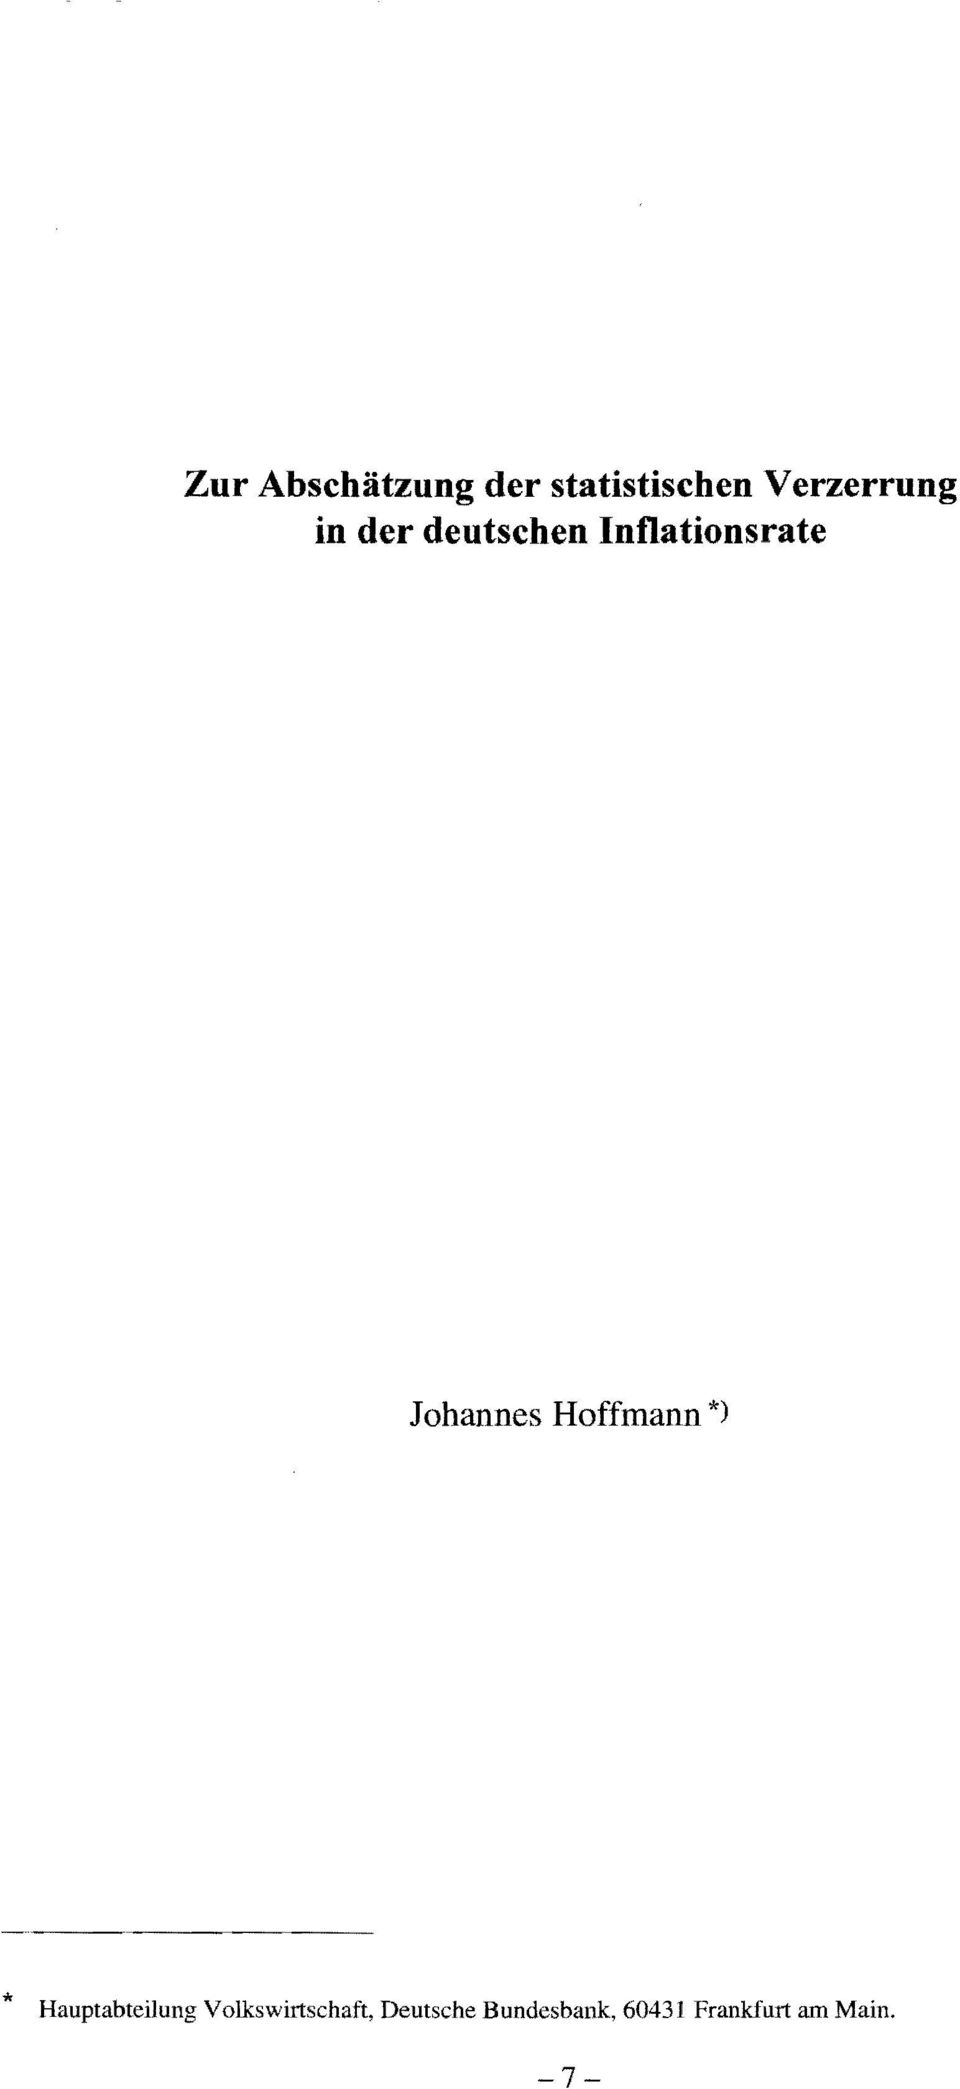 Hoffmann *) * Hauptabteilung